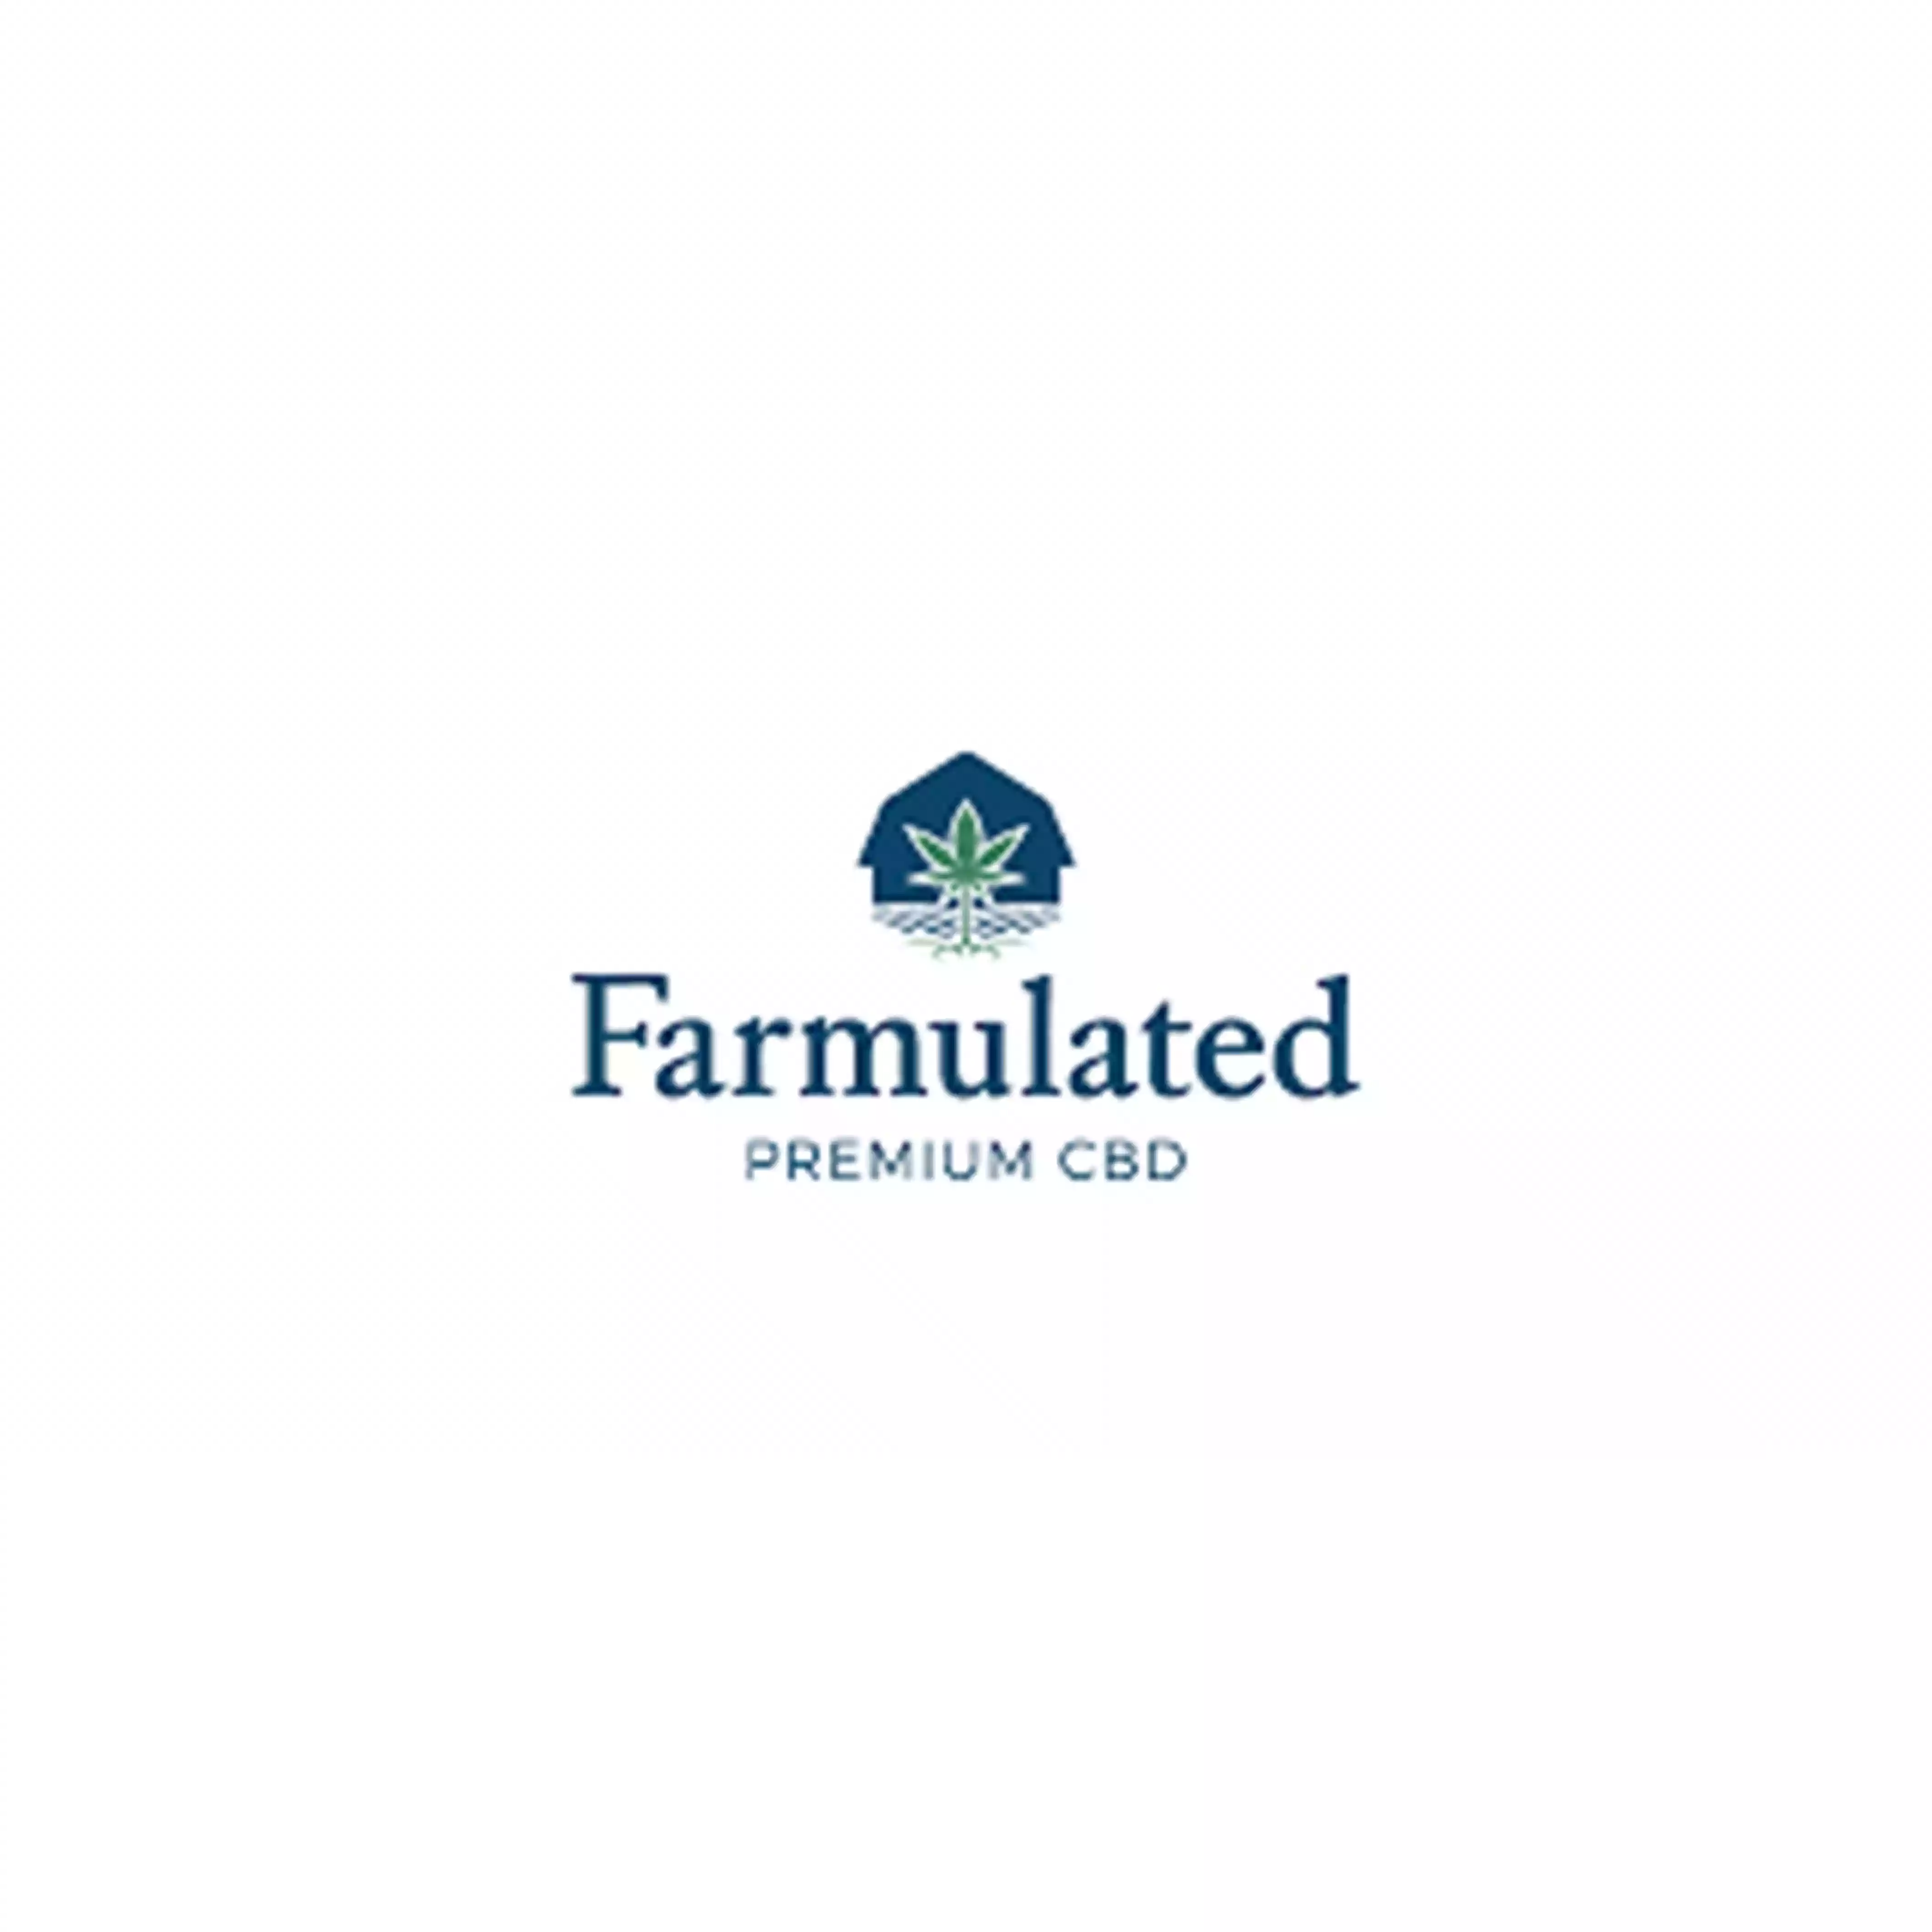 Farmulated discount codes